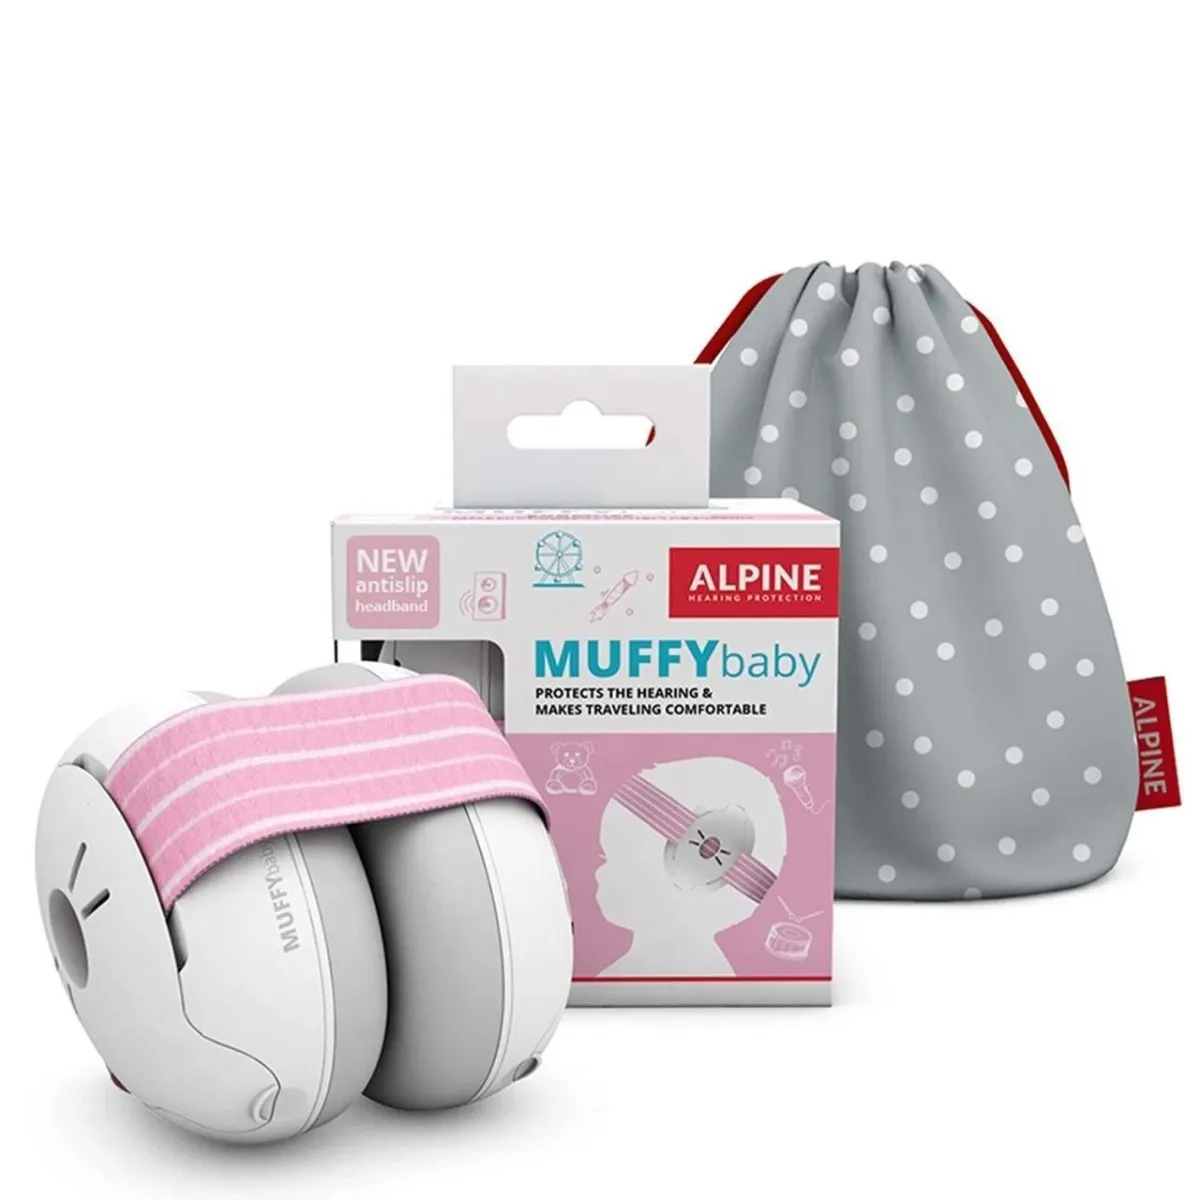 Casti antifonice pentru bebelusi de la 0-3 ani Muffy Baby Pink ALP24951, 1 bucata, Alpine 